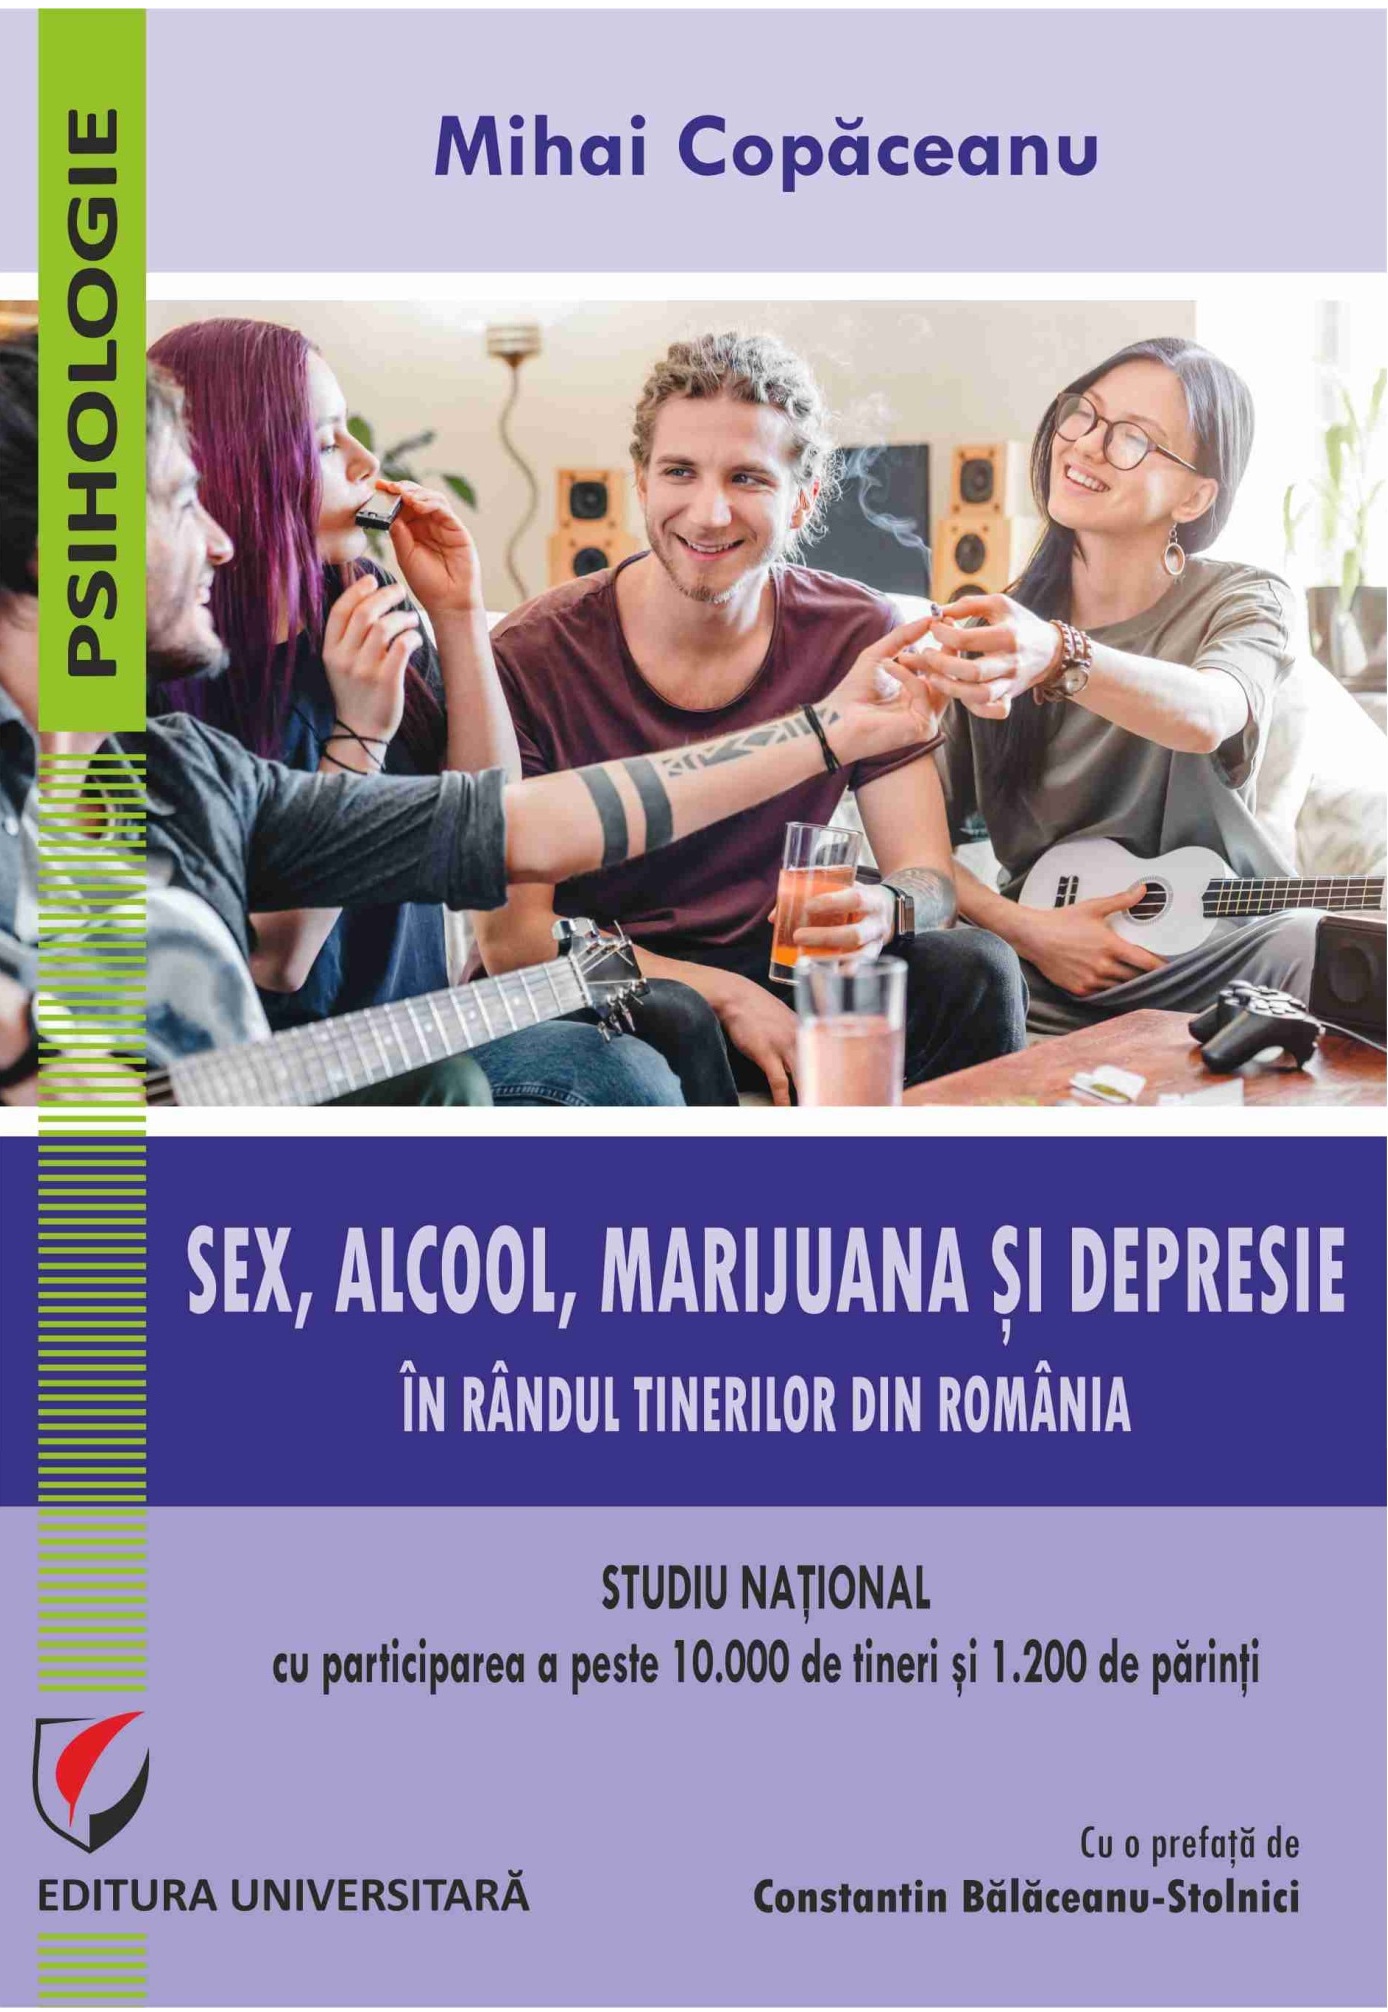 Sex, alcool, marijuana si depresie in randul tinerilor din Romania | Mihai Copaceanu carturesti 2022